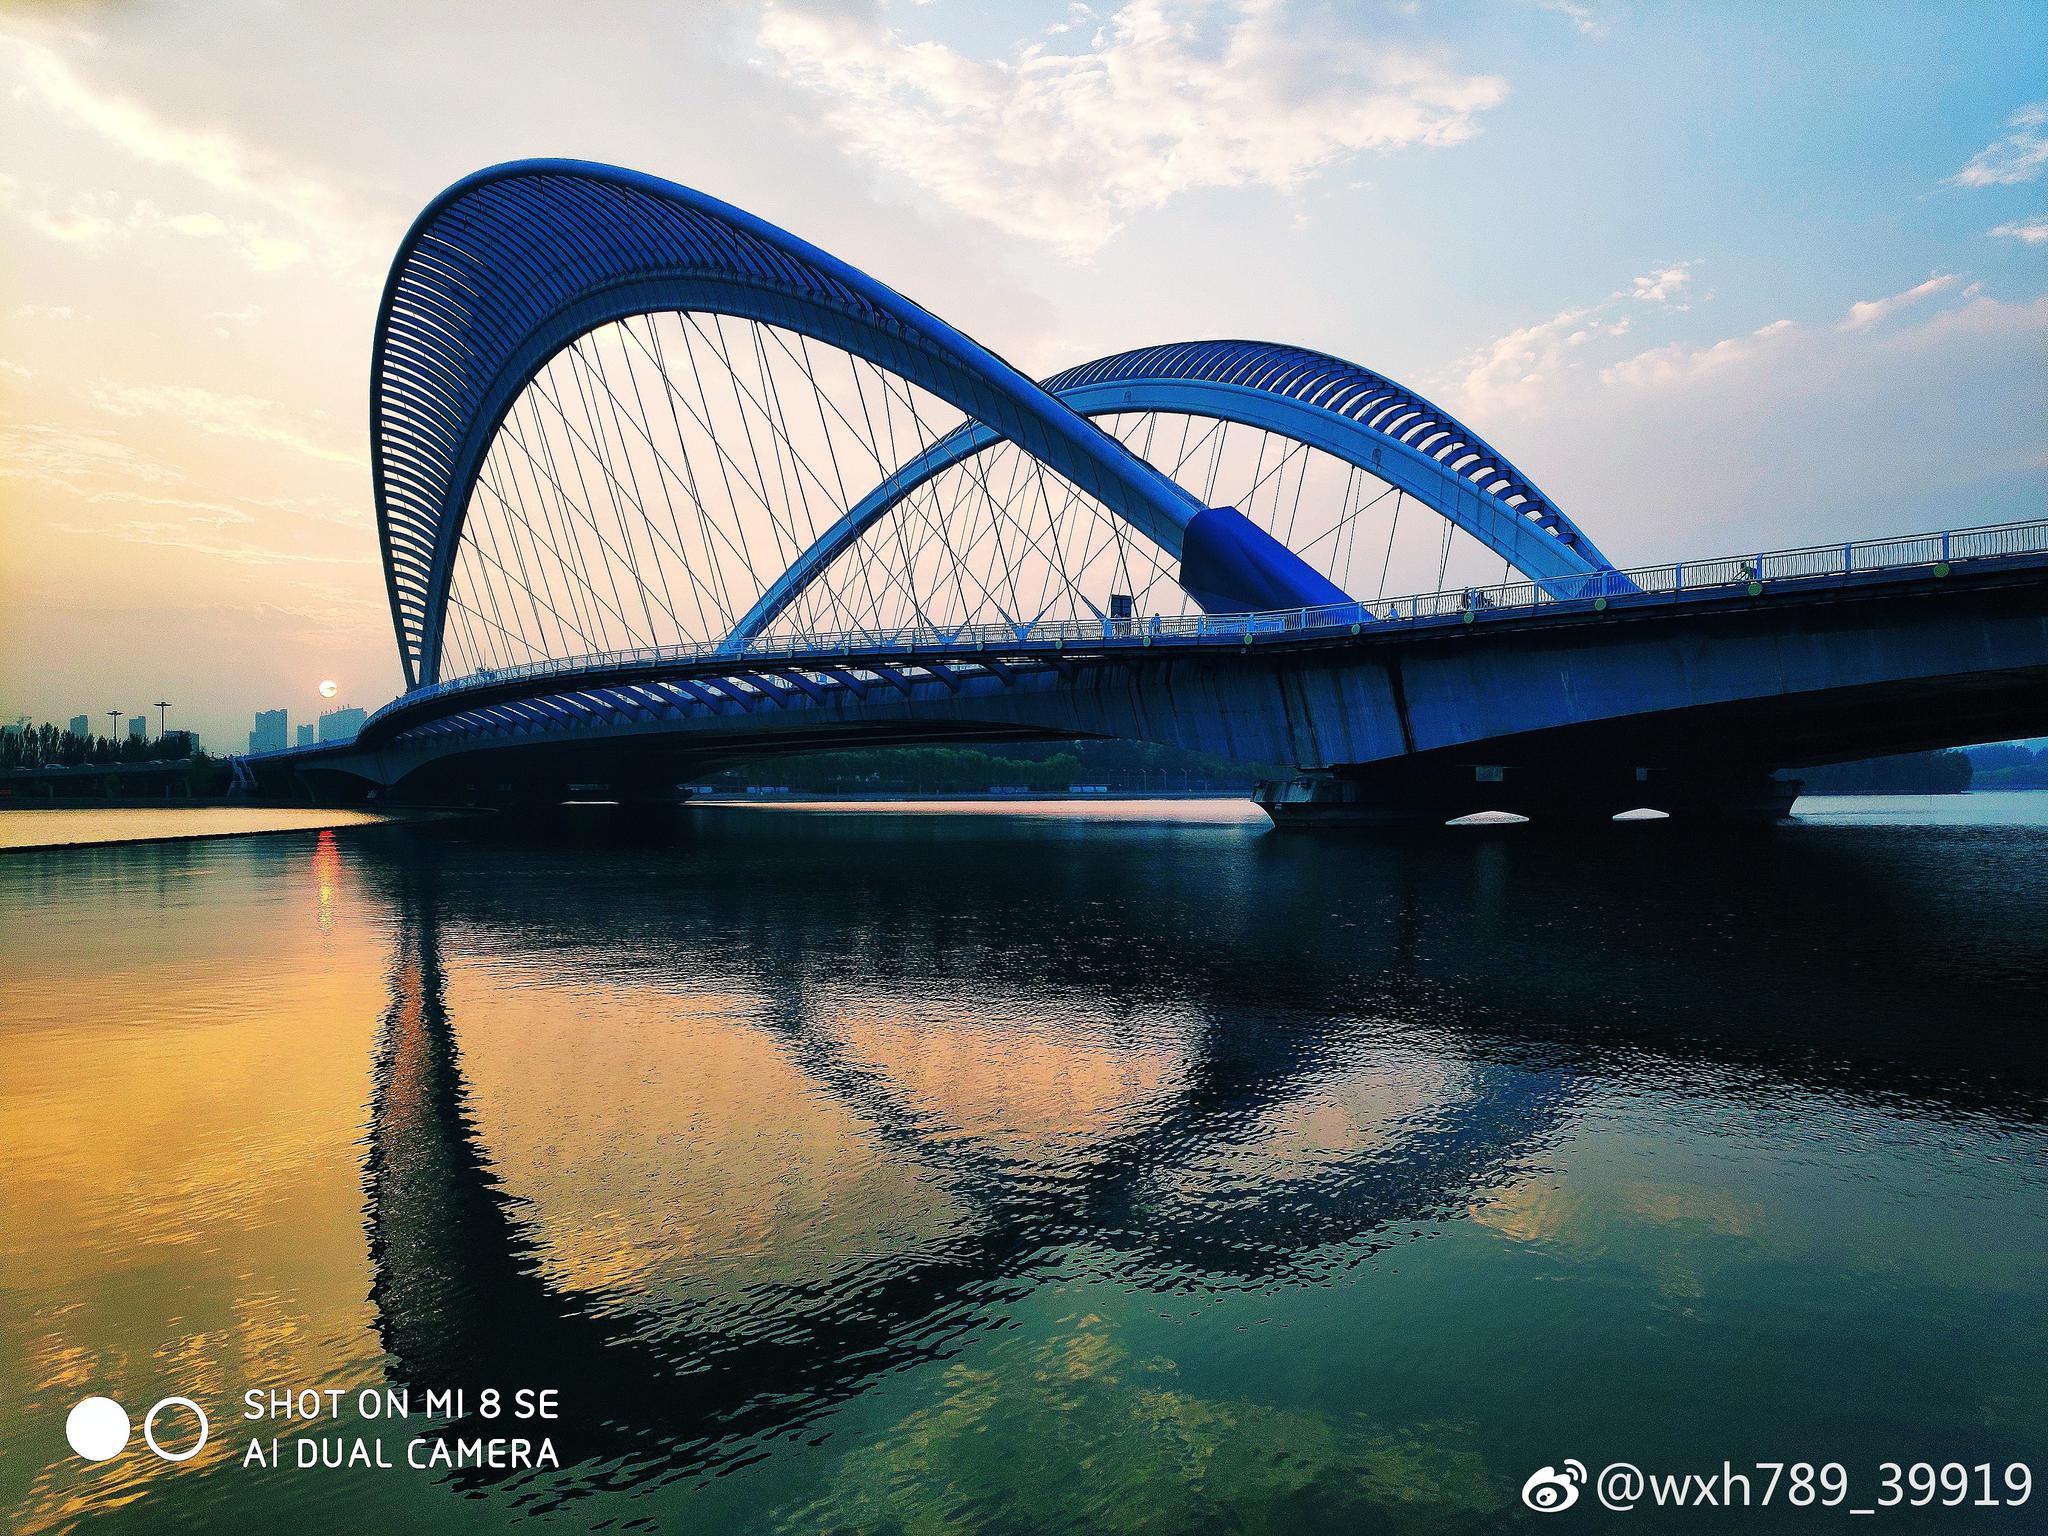 泸州长江二桥东岸钢桁梁完成吊装 预计12月合龙_四川在线